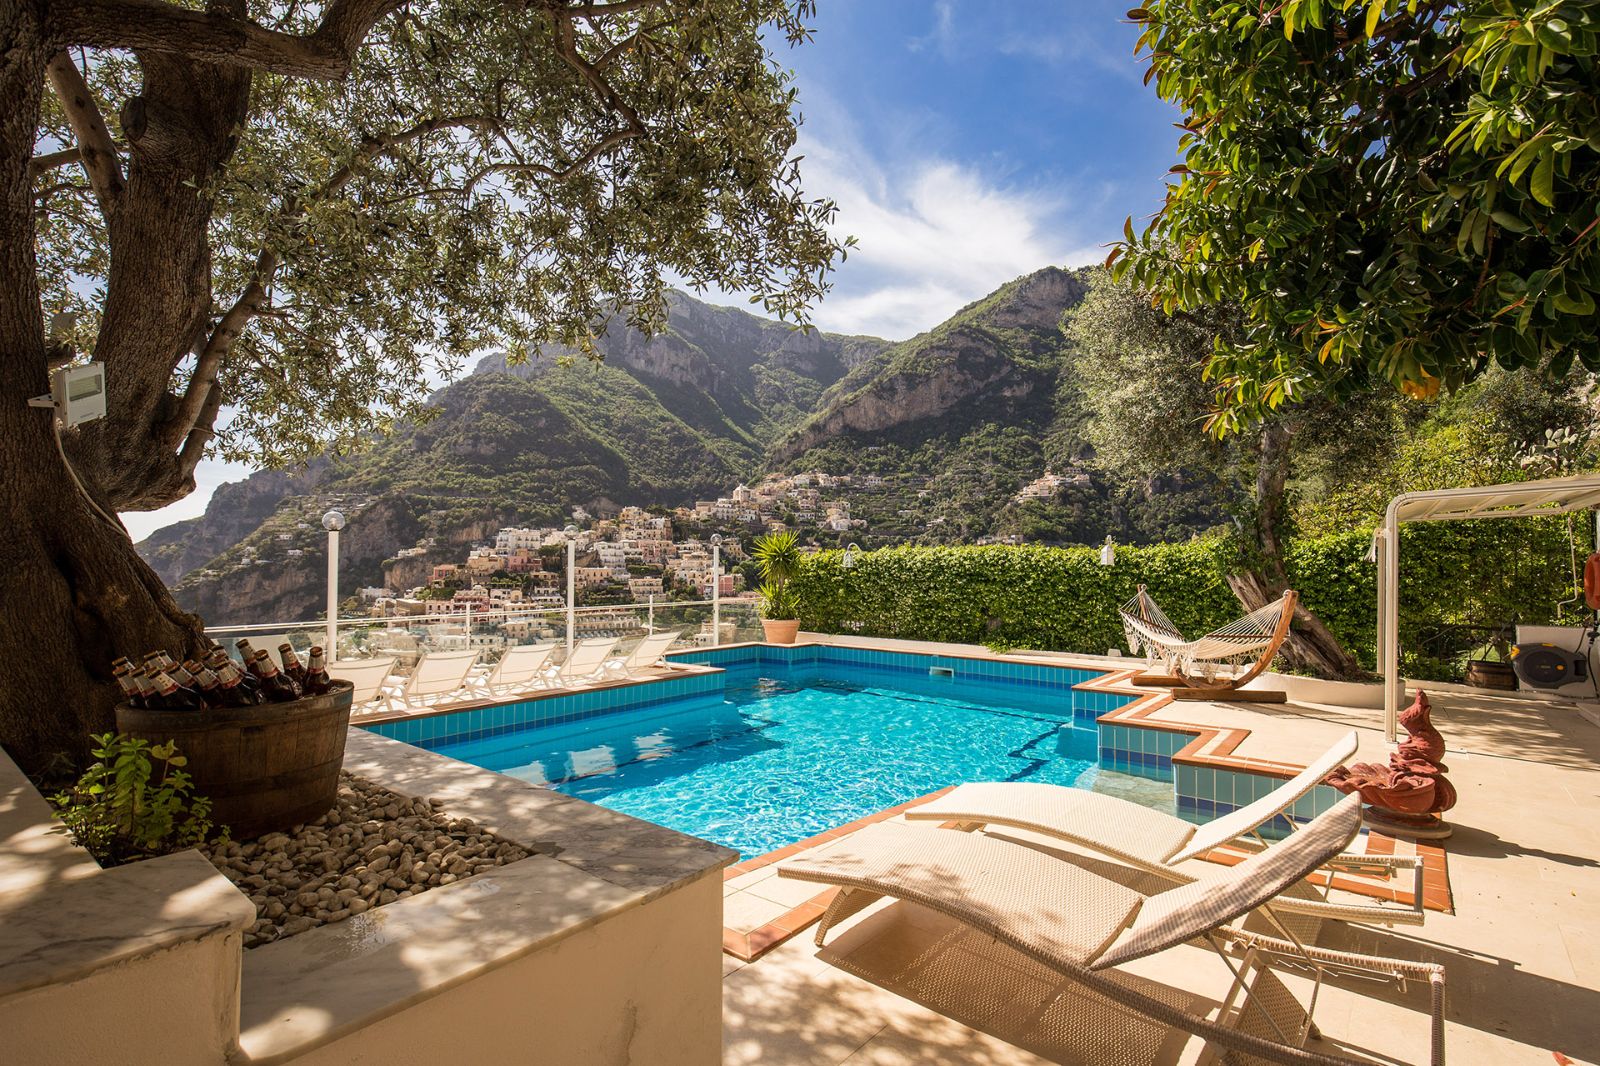 Pool at Villa Tuffariello in Amalfi